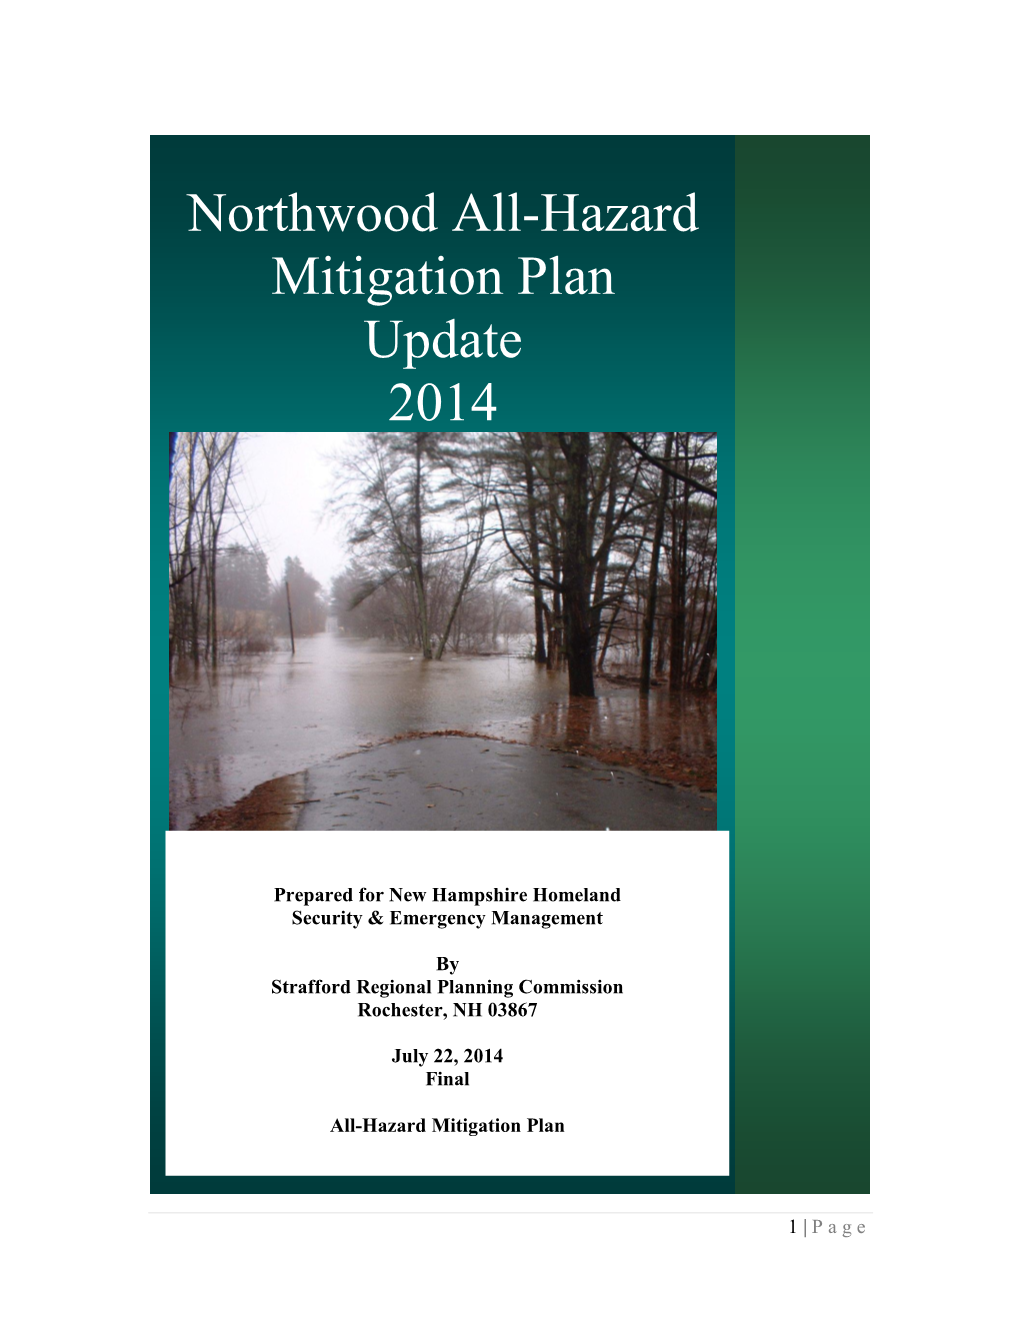 Northwood All-Hazard Mitigation Plan Update 2014